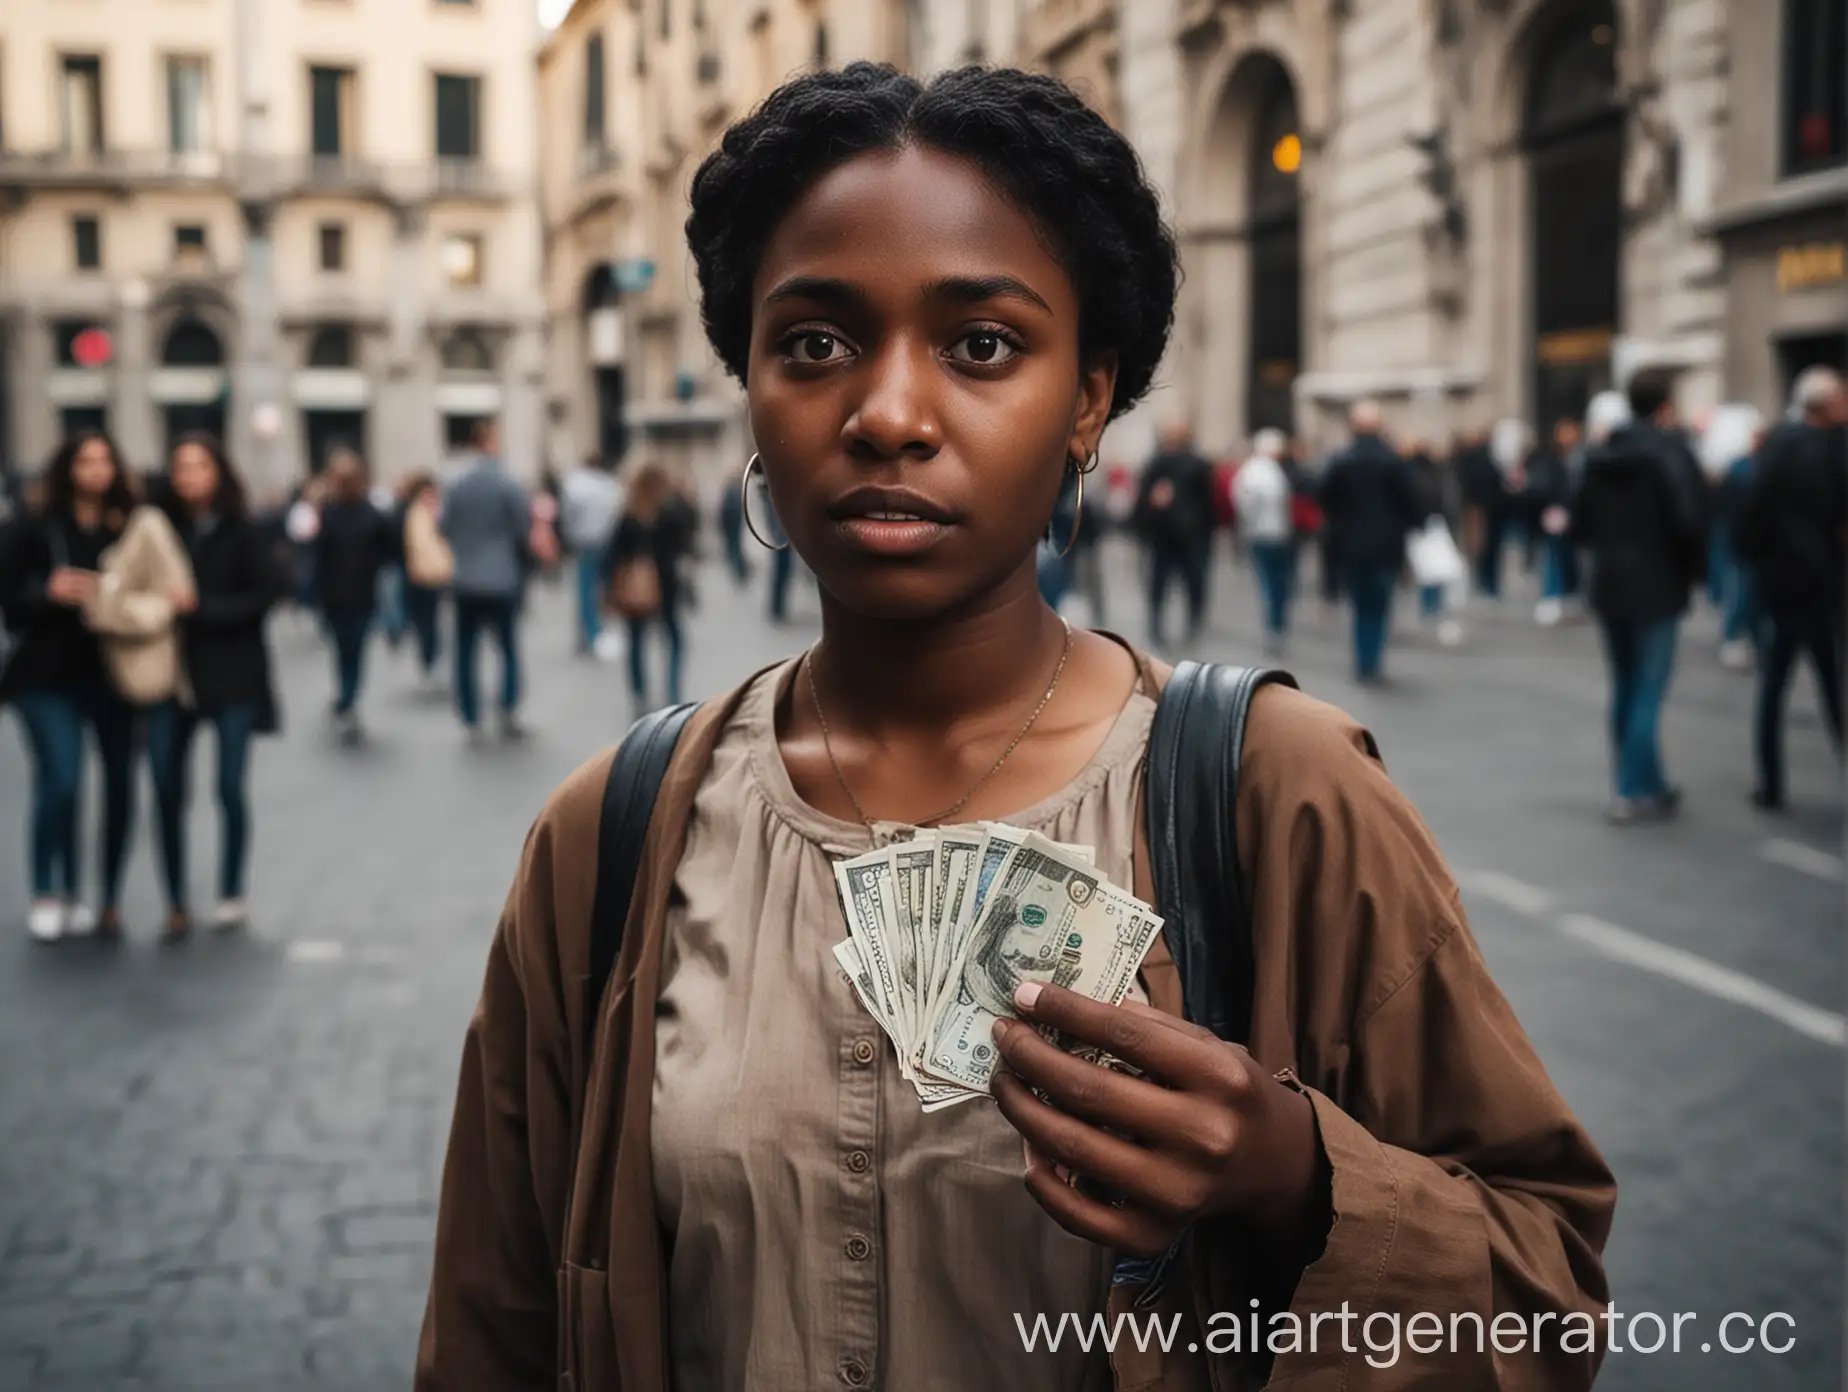 Milan-Street-Scene-Darkskinned-Person-Begging-for-Money